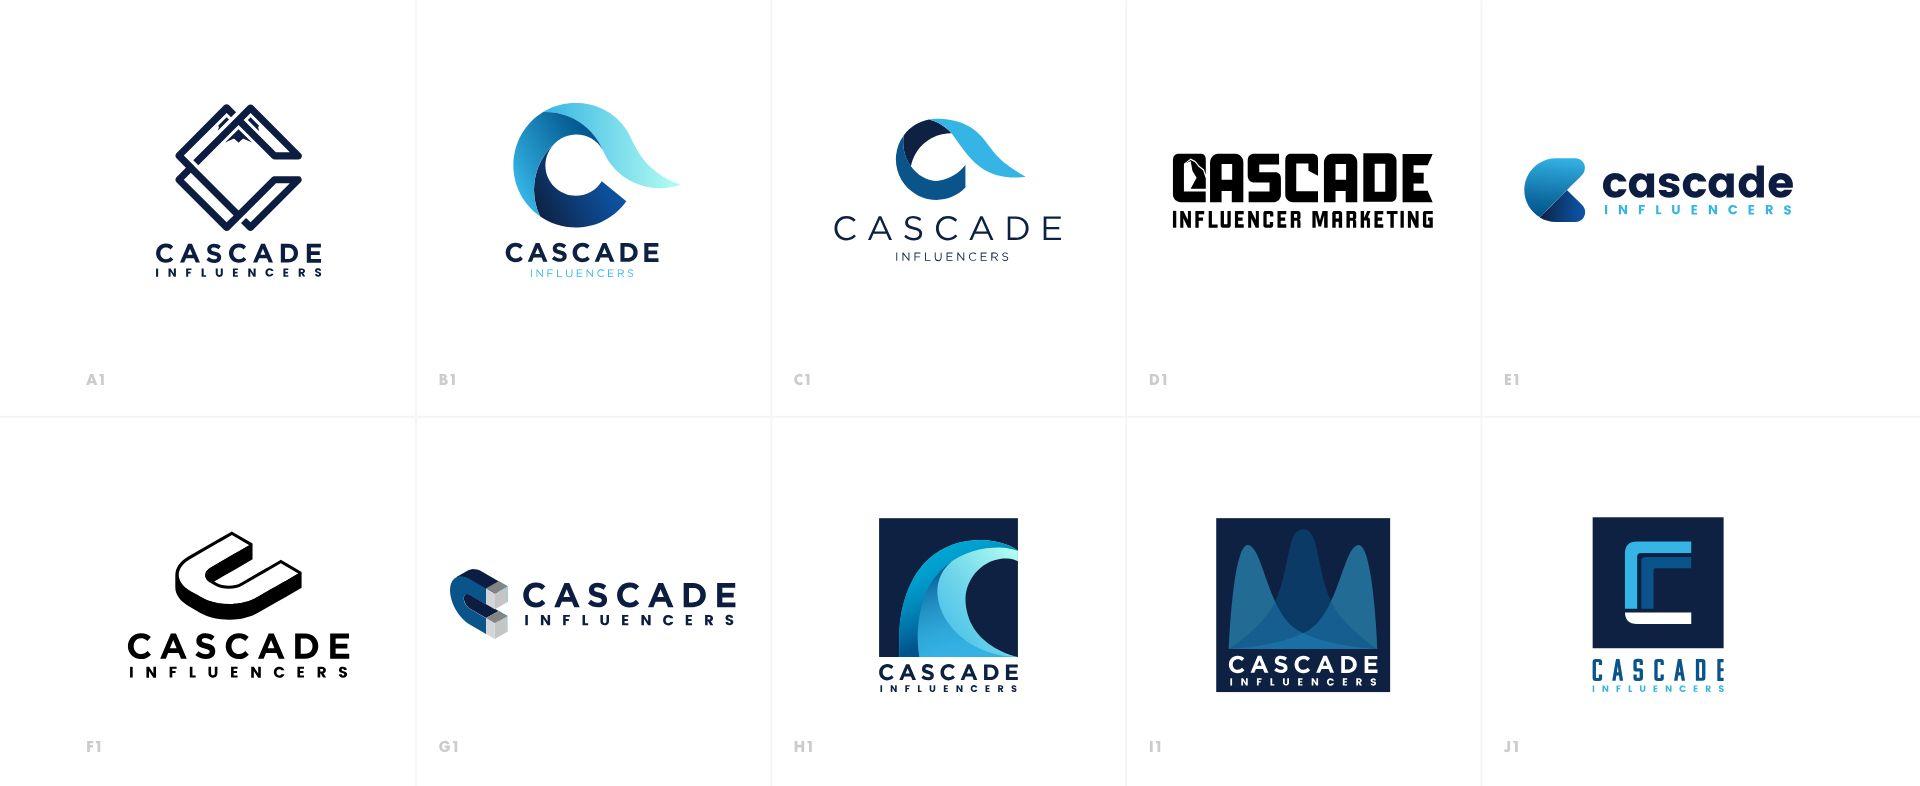 Cascade Logo - Cascade Influencers Logo Design | Power Digital